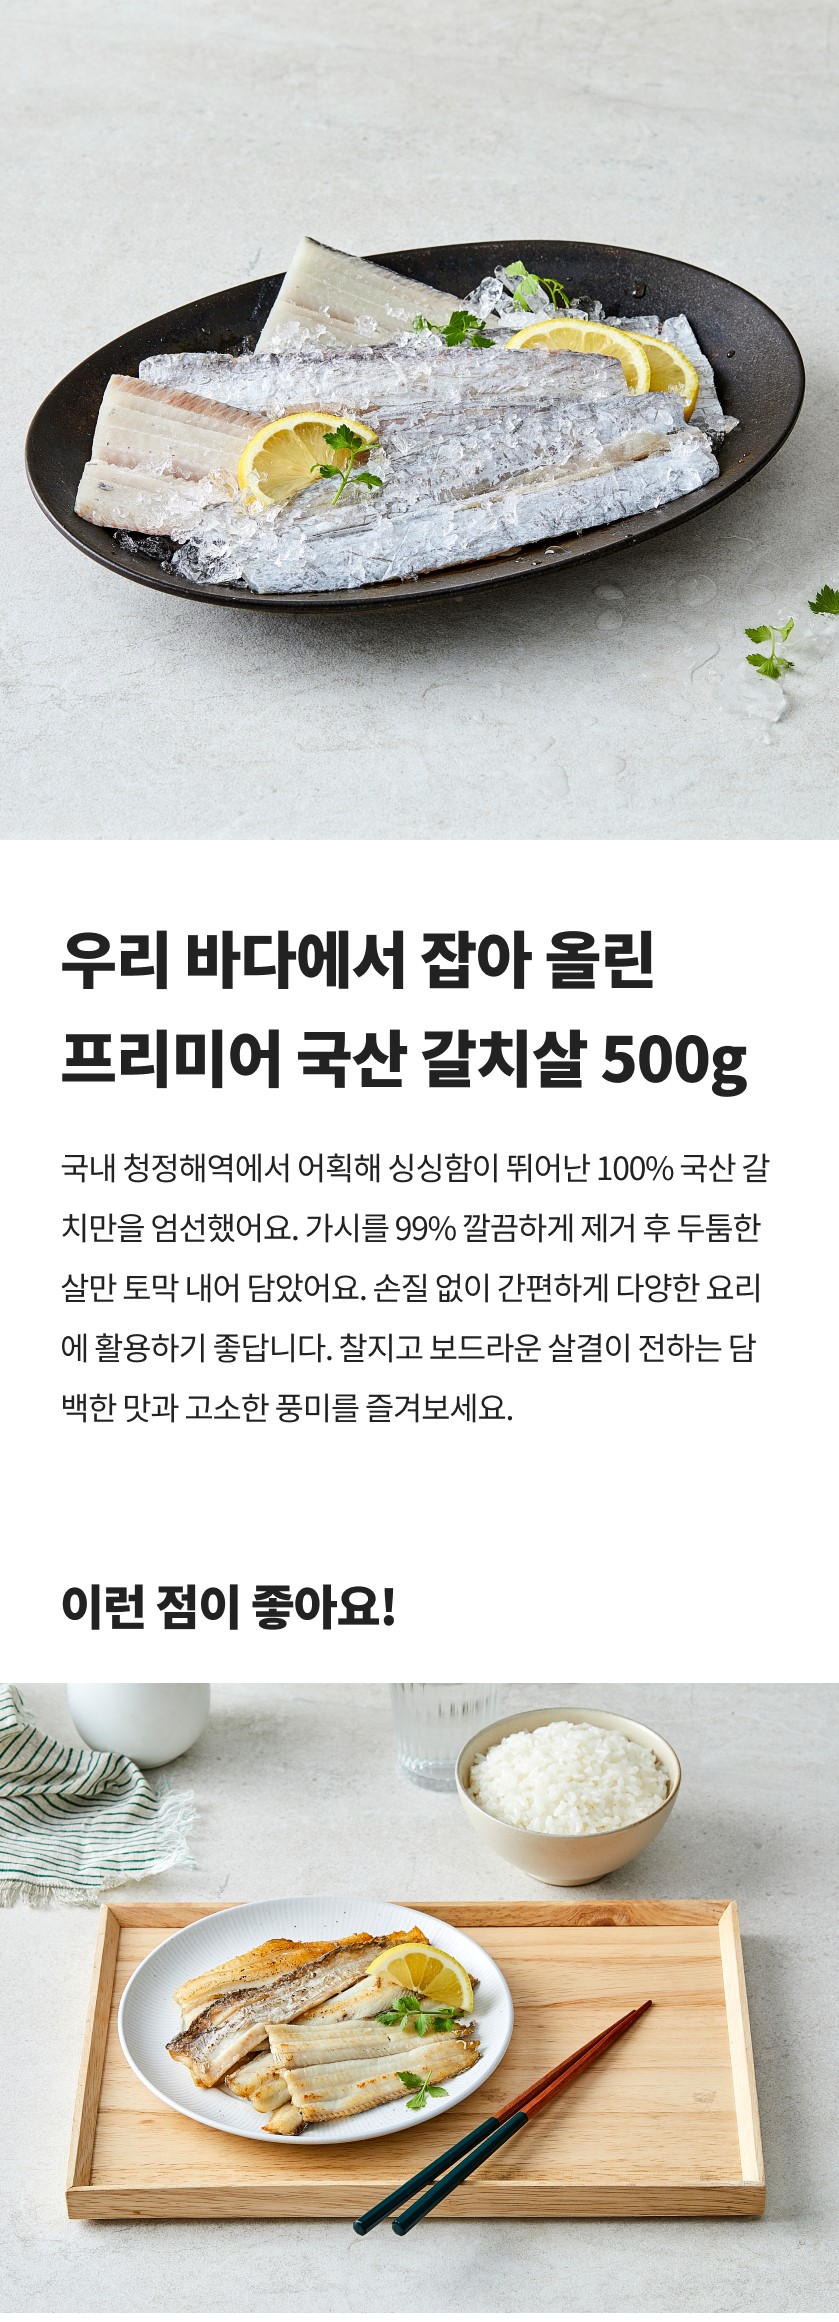 韓國食品-[Premier] Fresh Frozen Hairtail 500g